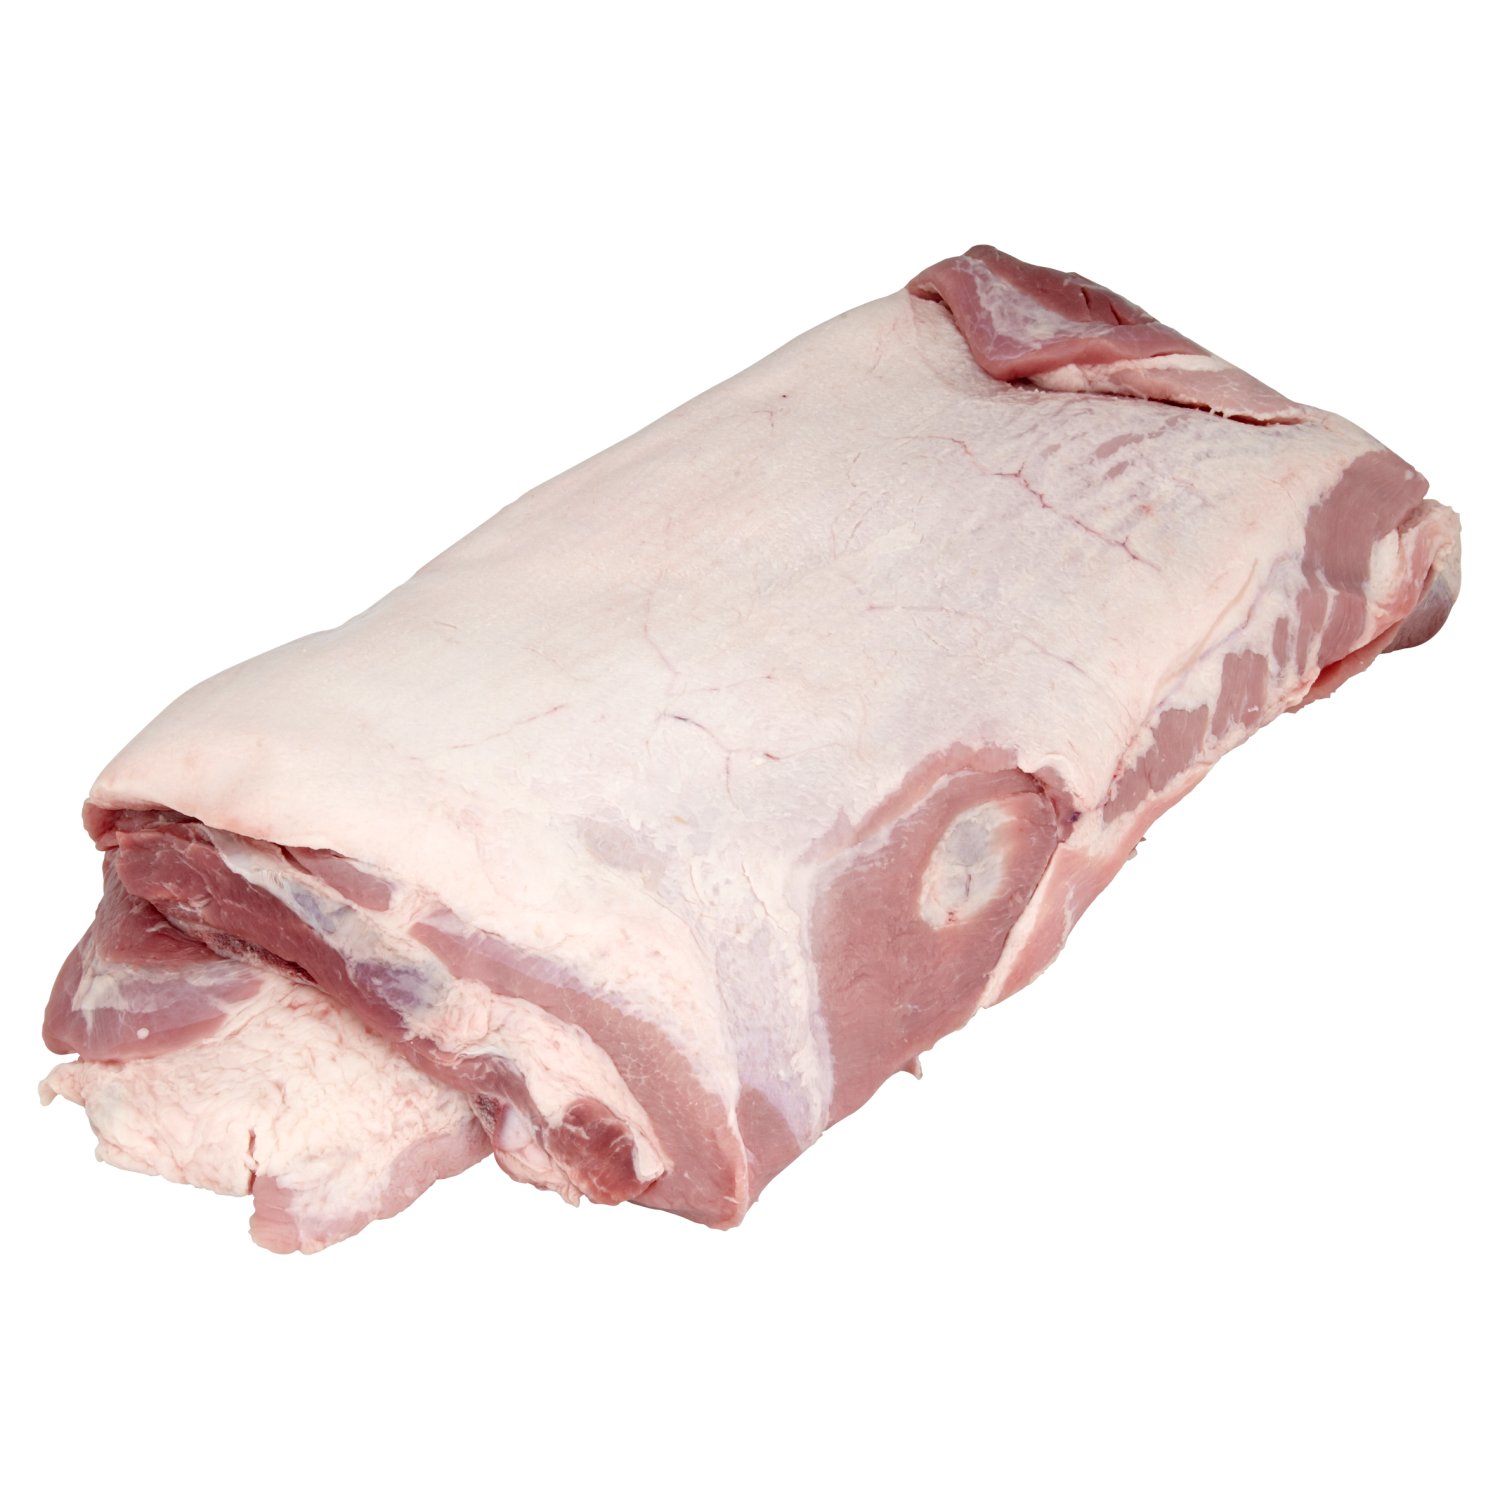 Pork Belly Bone In